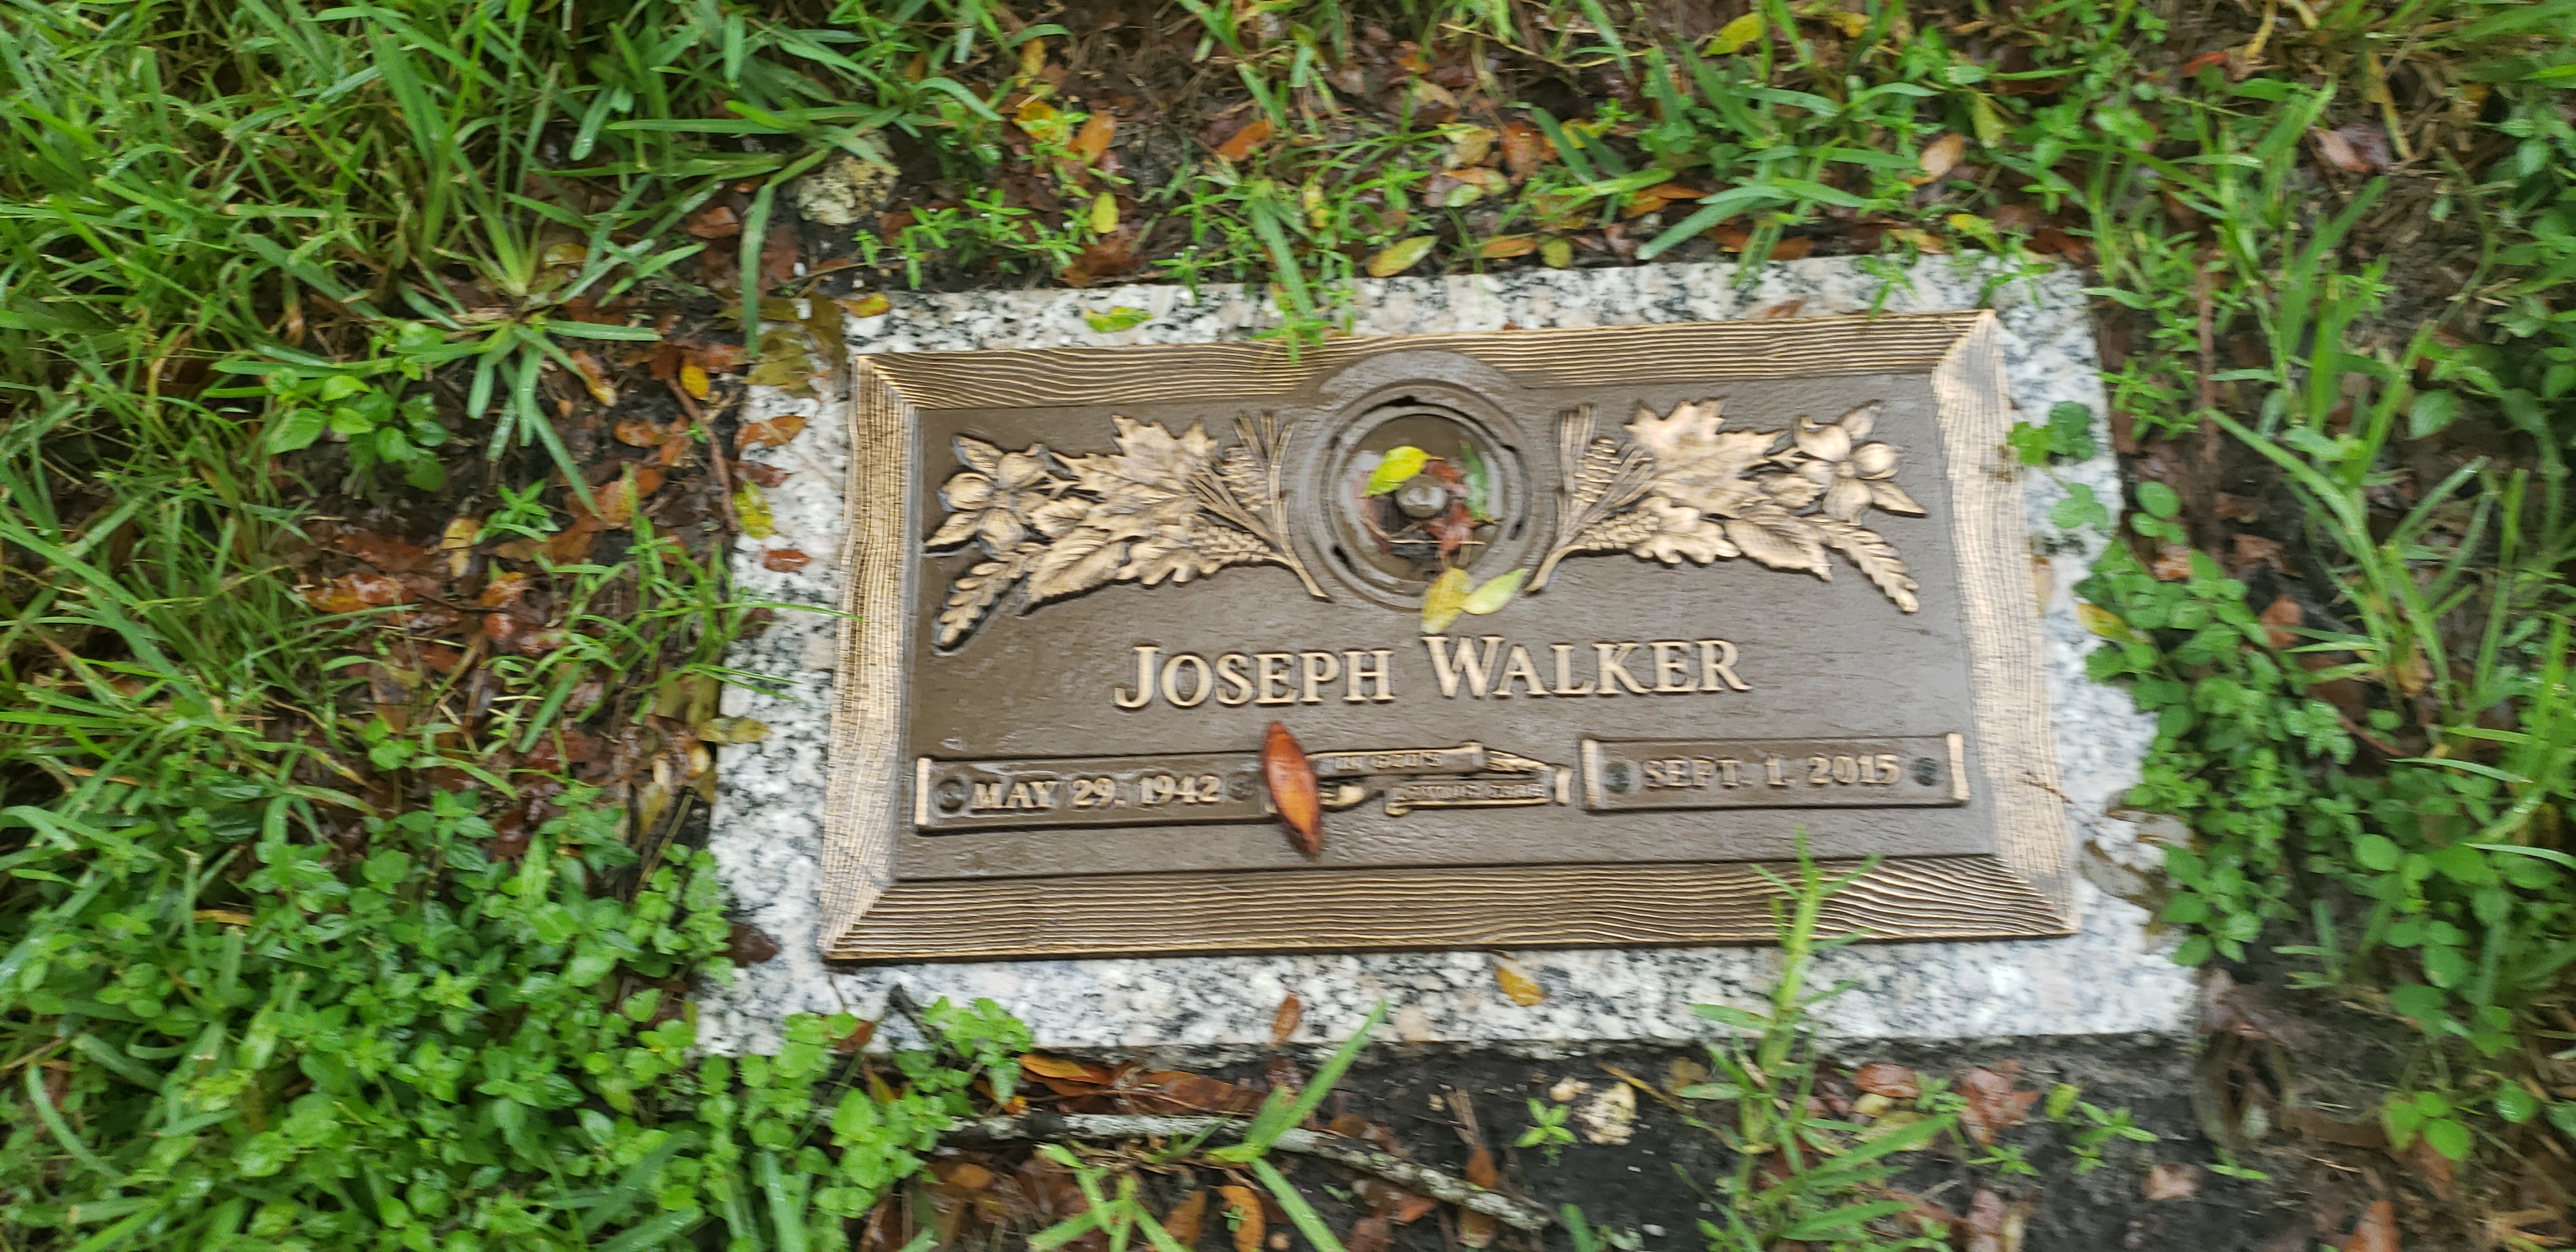 Joseph Walker